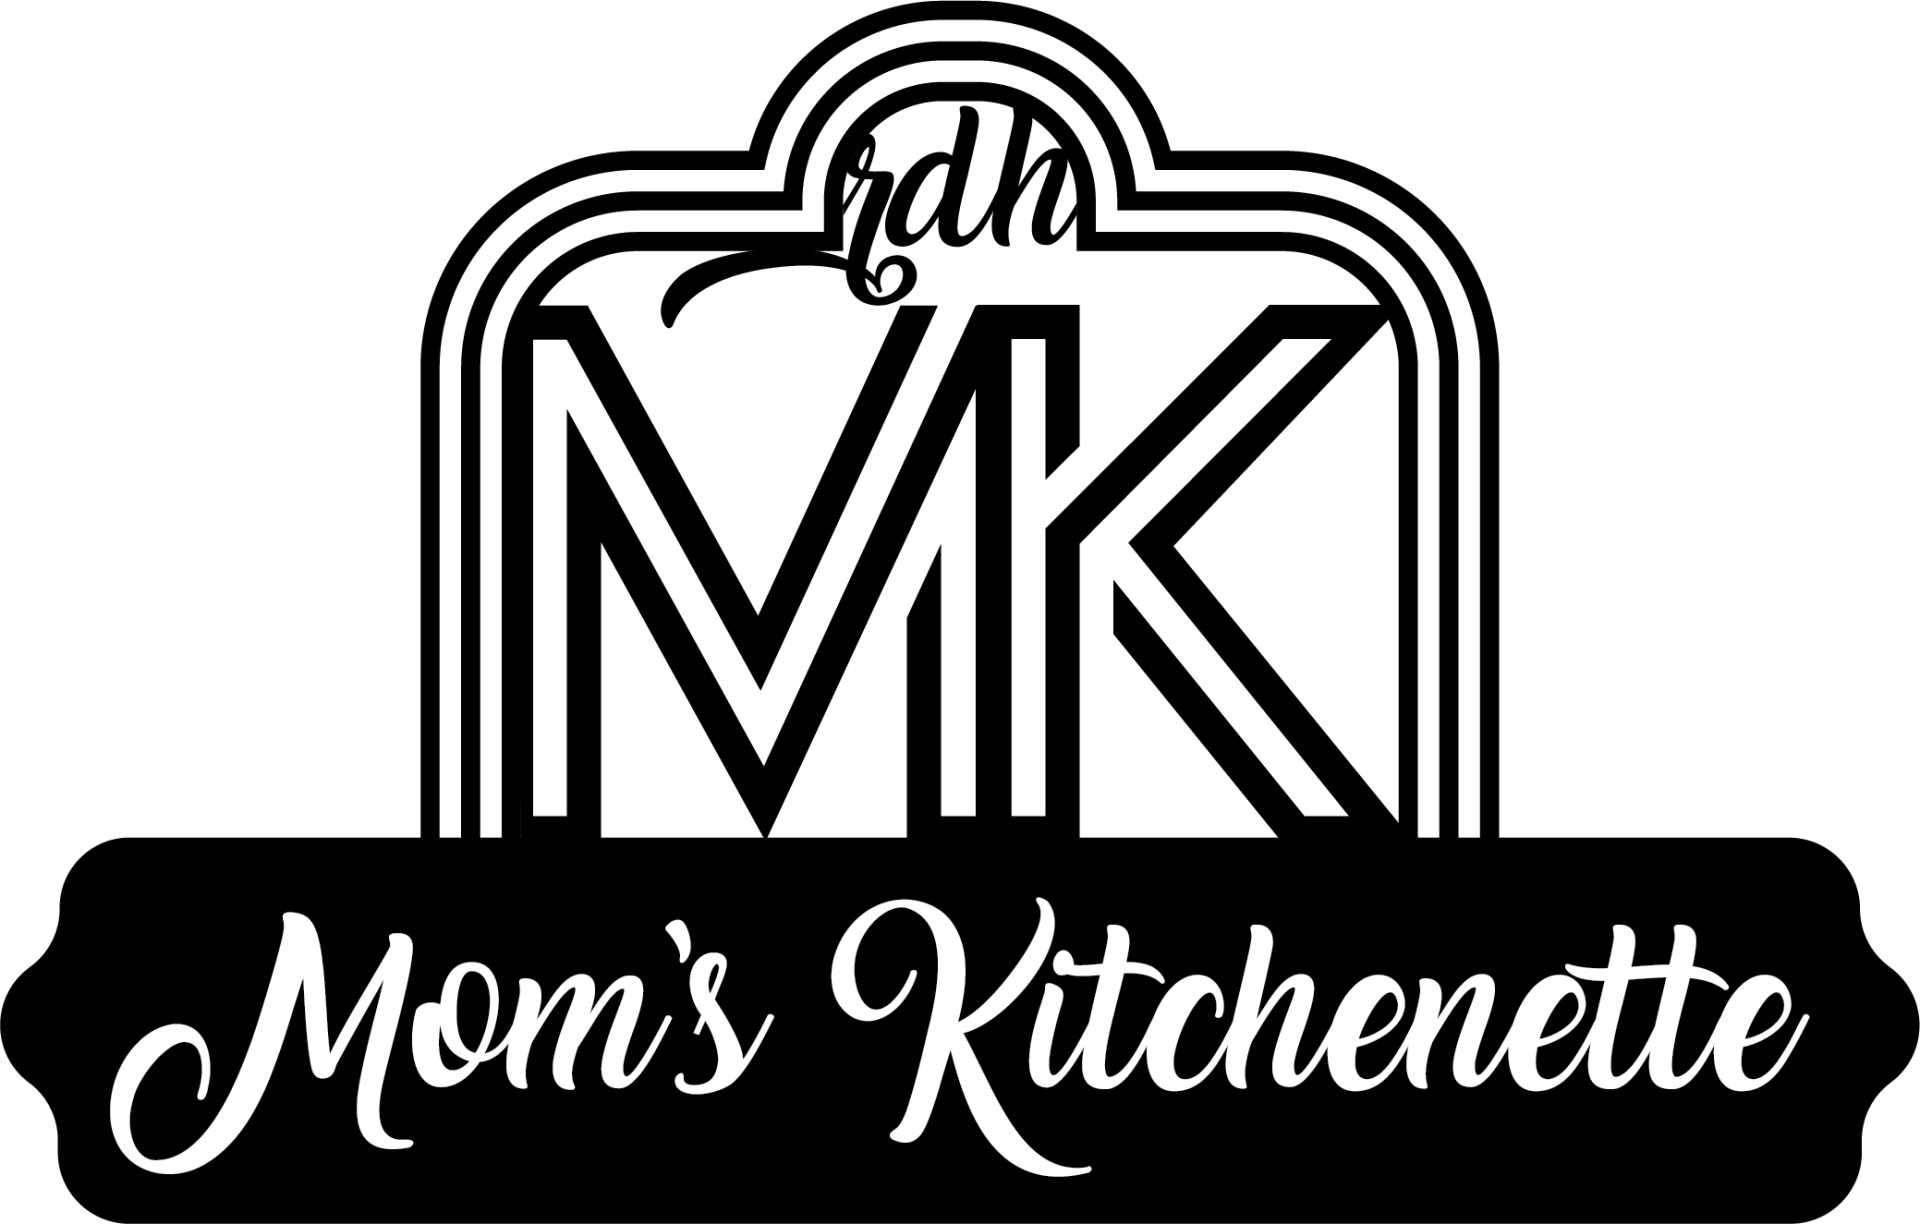 mom's kitchenette black and white vintage logo